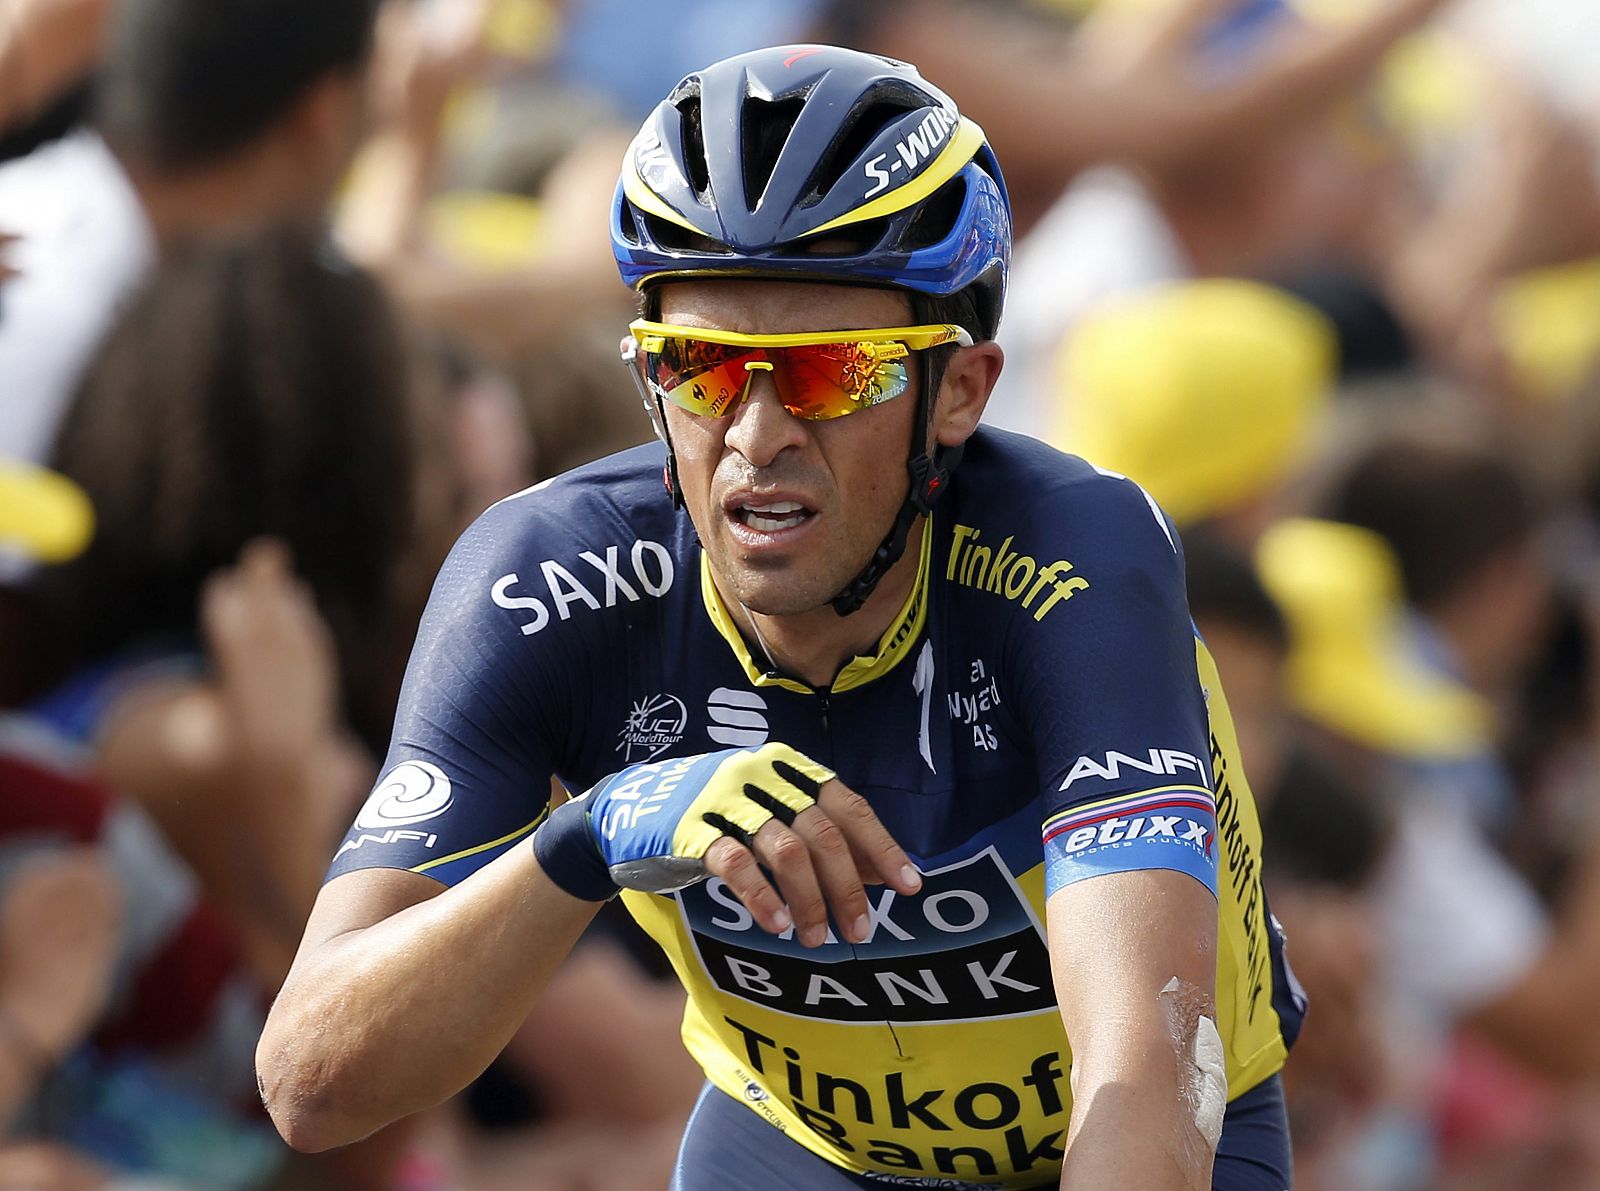 El ciclista español Alberto Contador gesticula tras la quinta etapa del Tour de Francia 2013